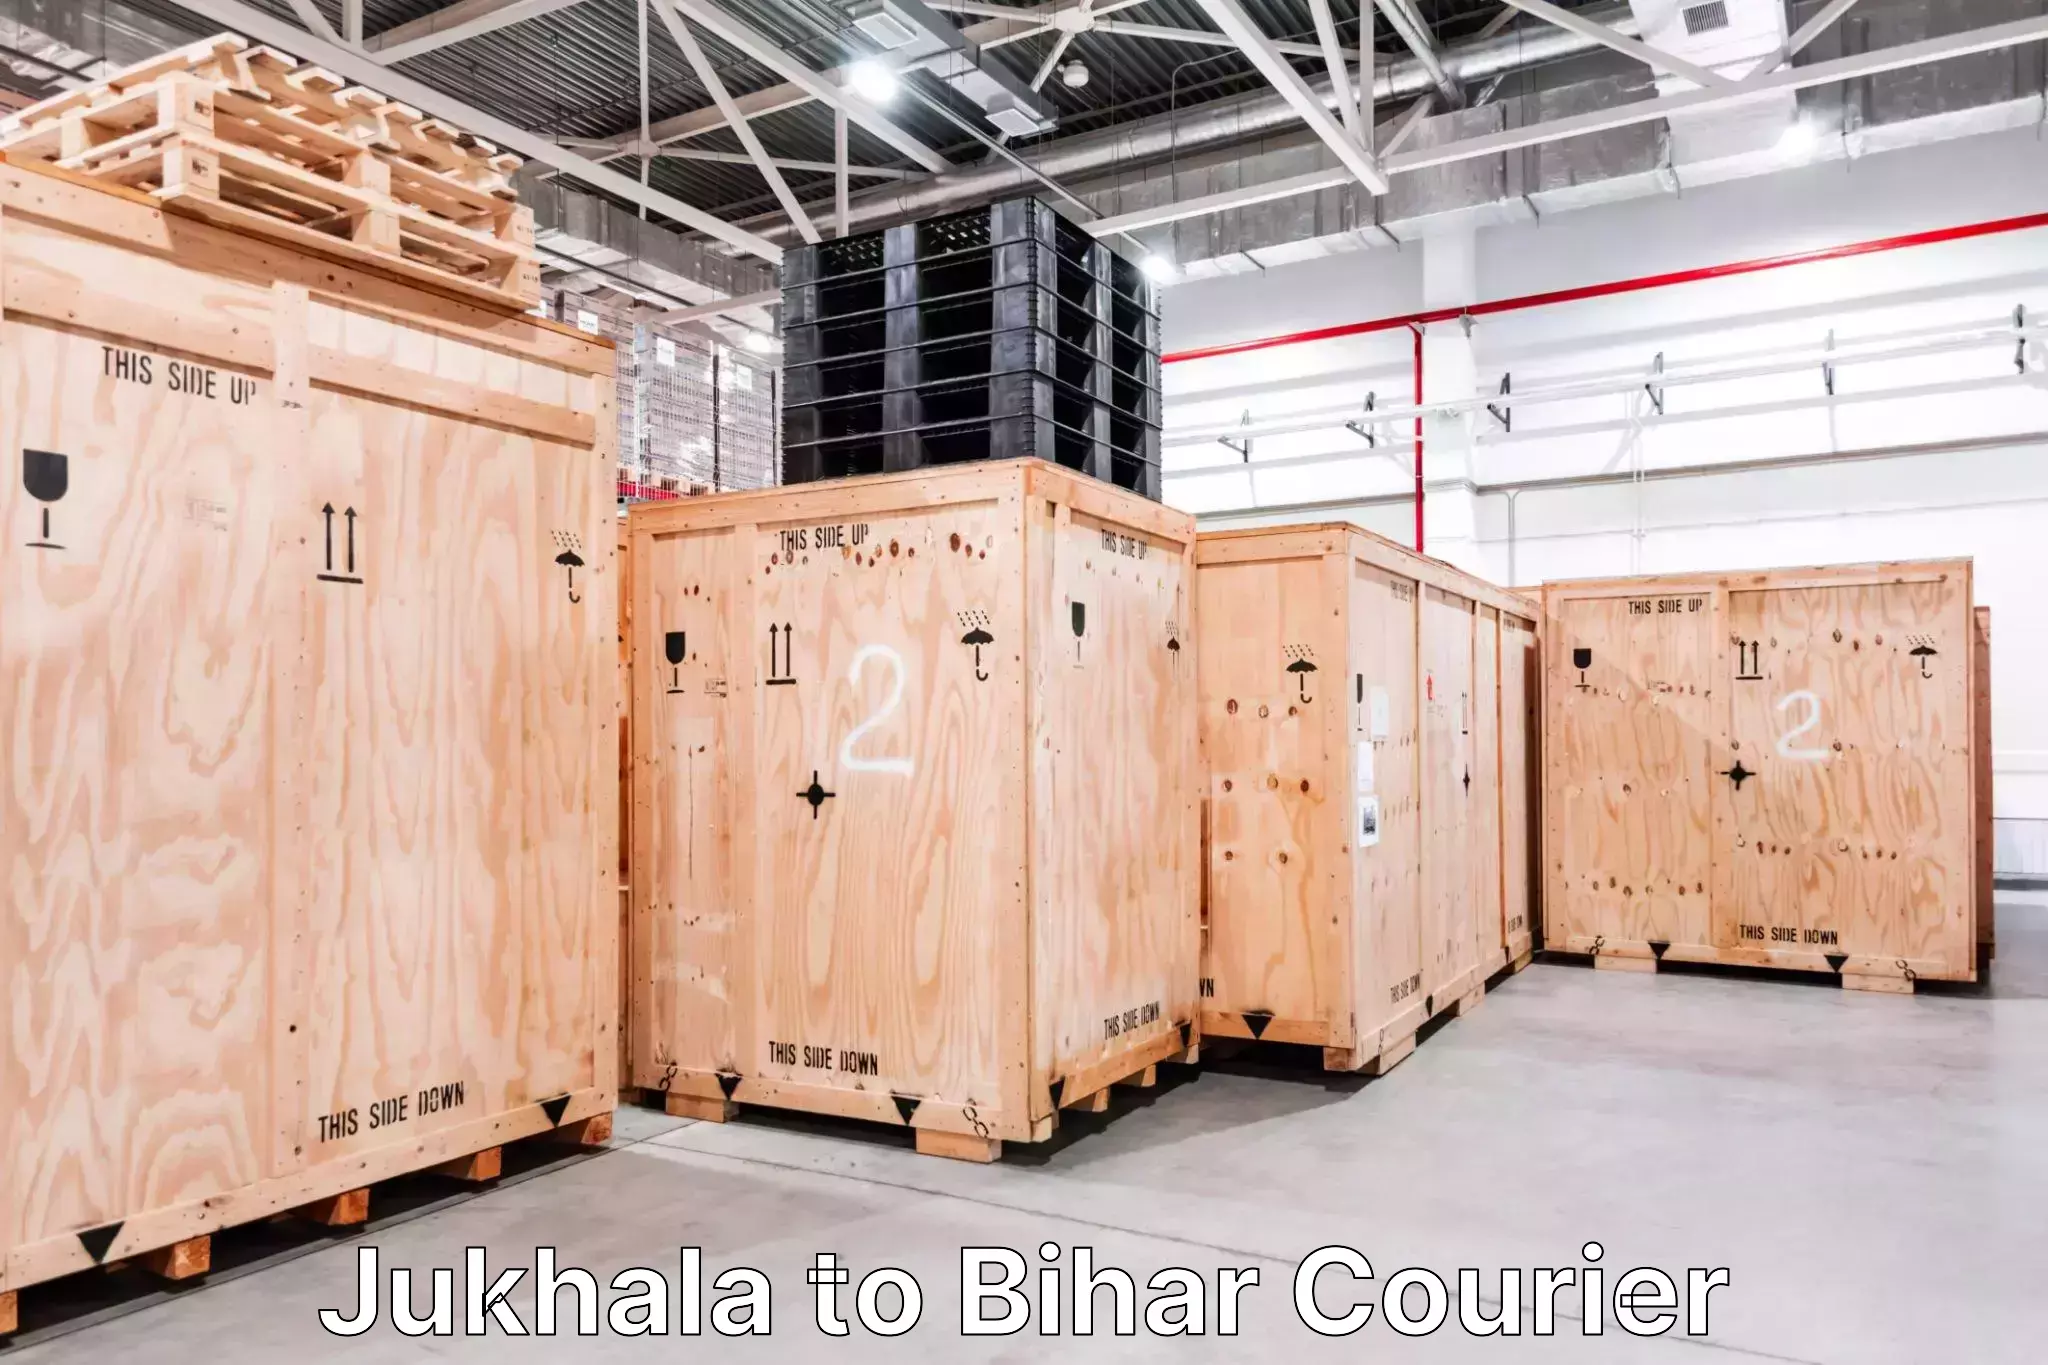 Door-to-door baggage service Jukhala to Giddha